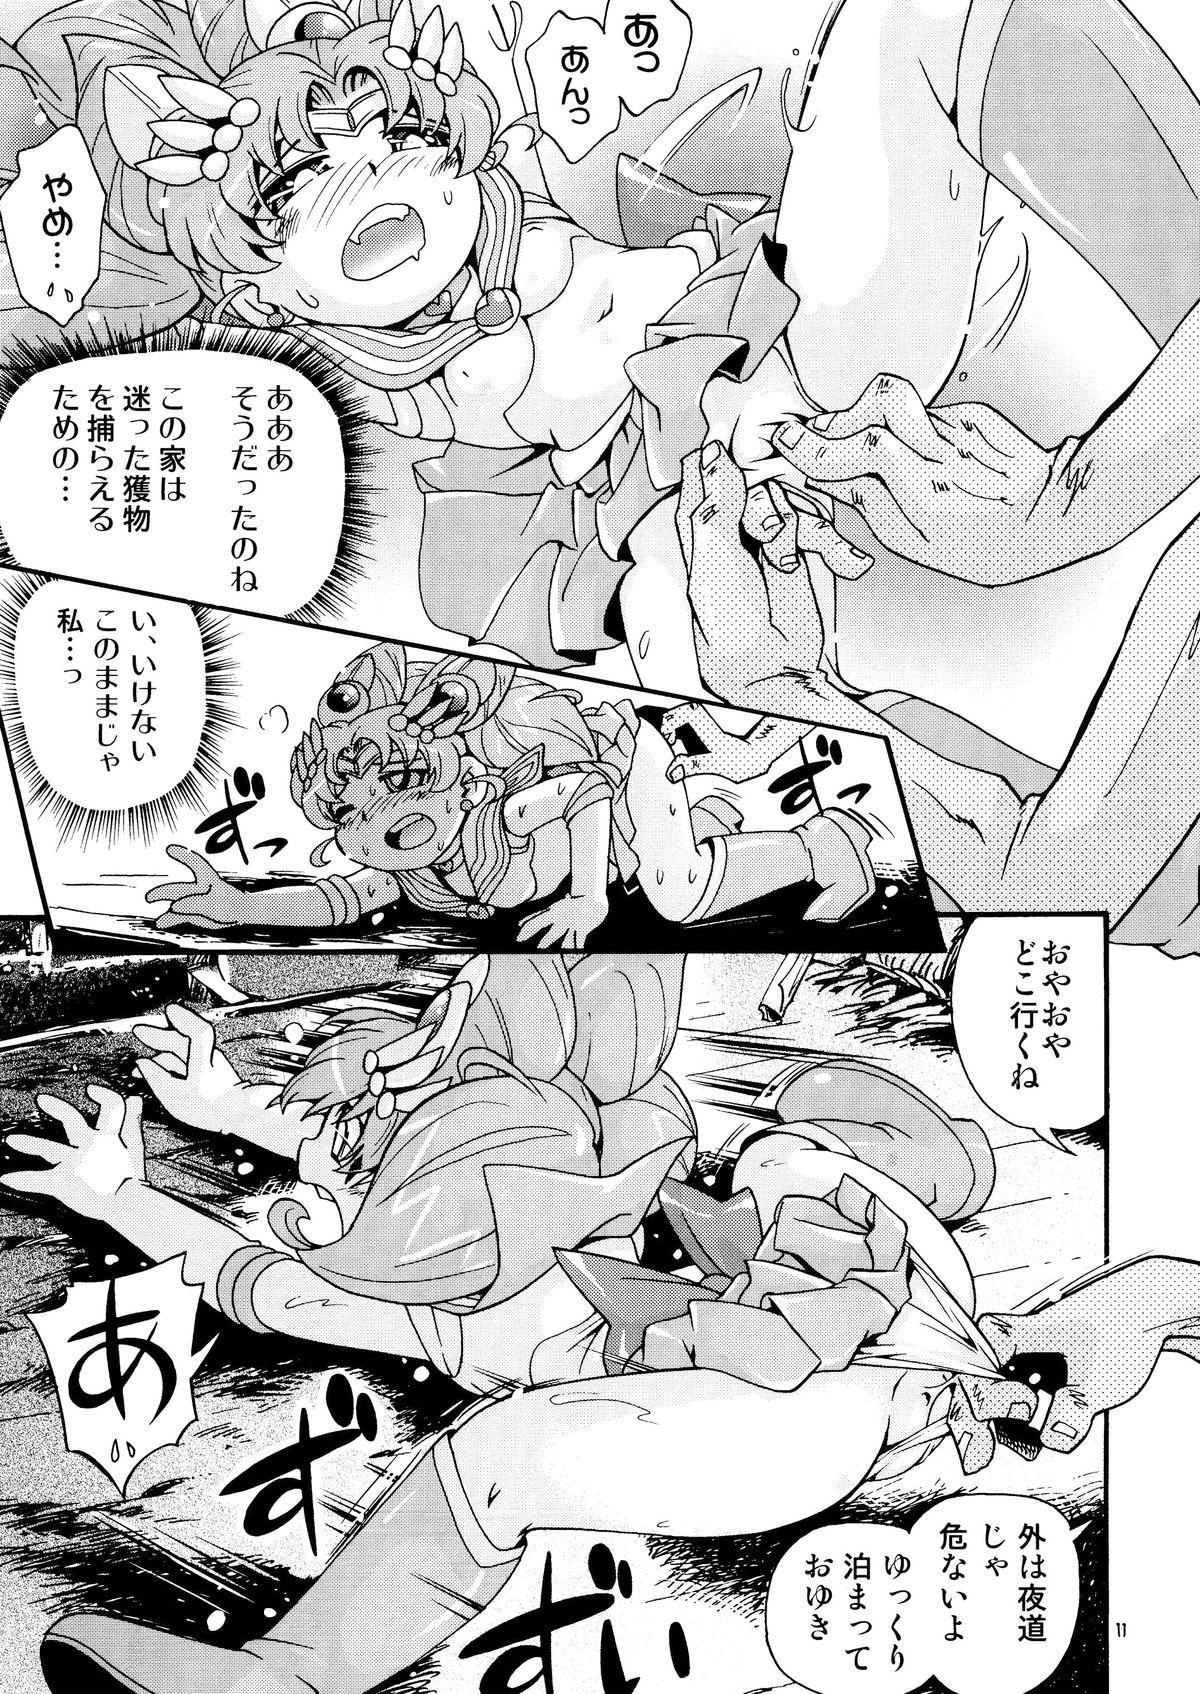 Bangbros Chiccha na Bishoujo Senshi 4 - Sailor moon Cavala - Page 11